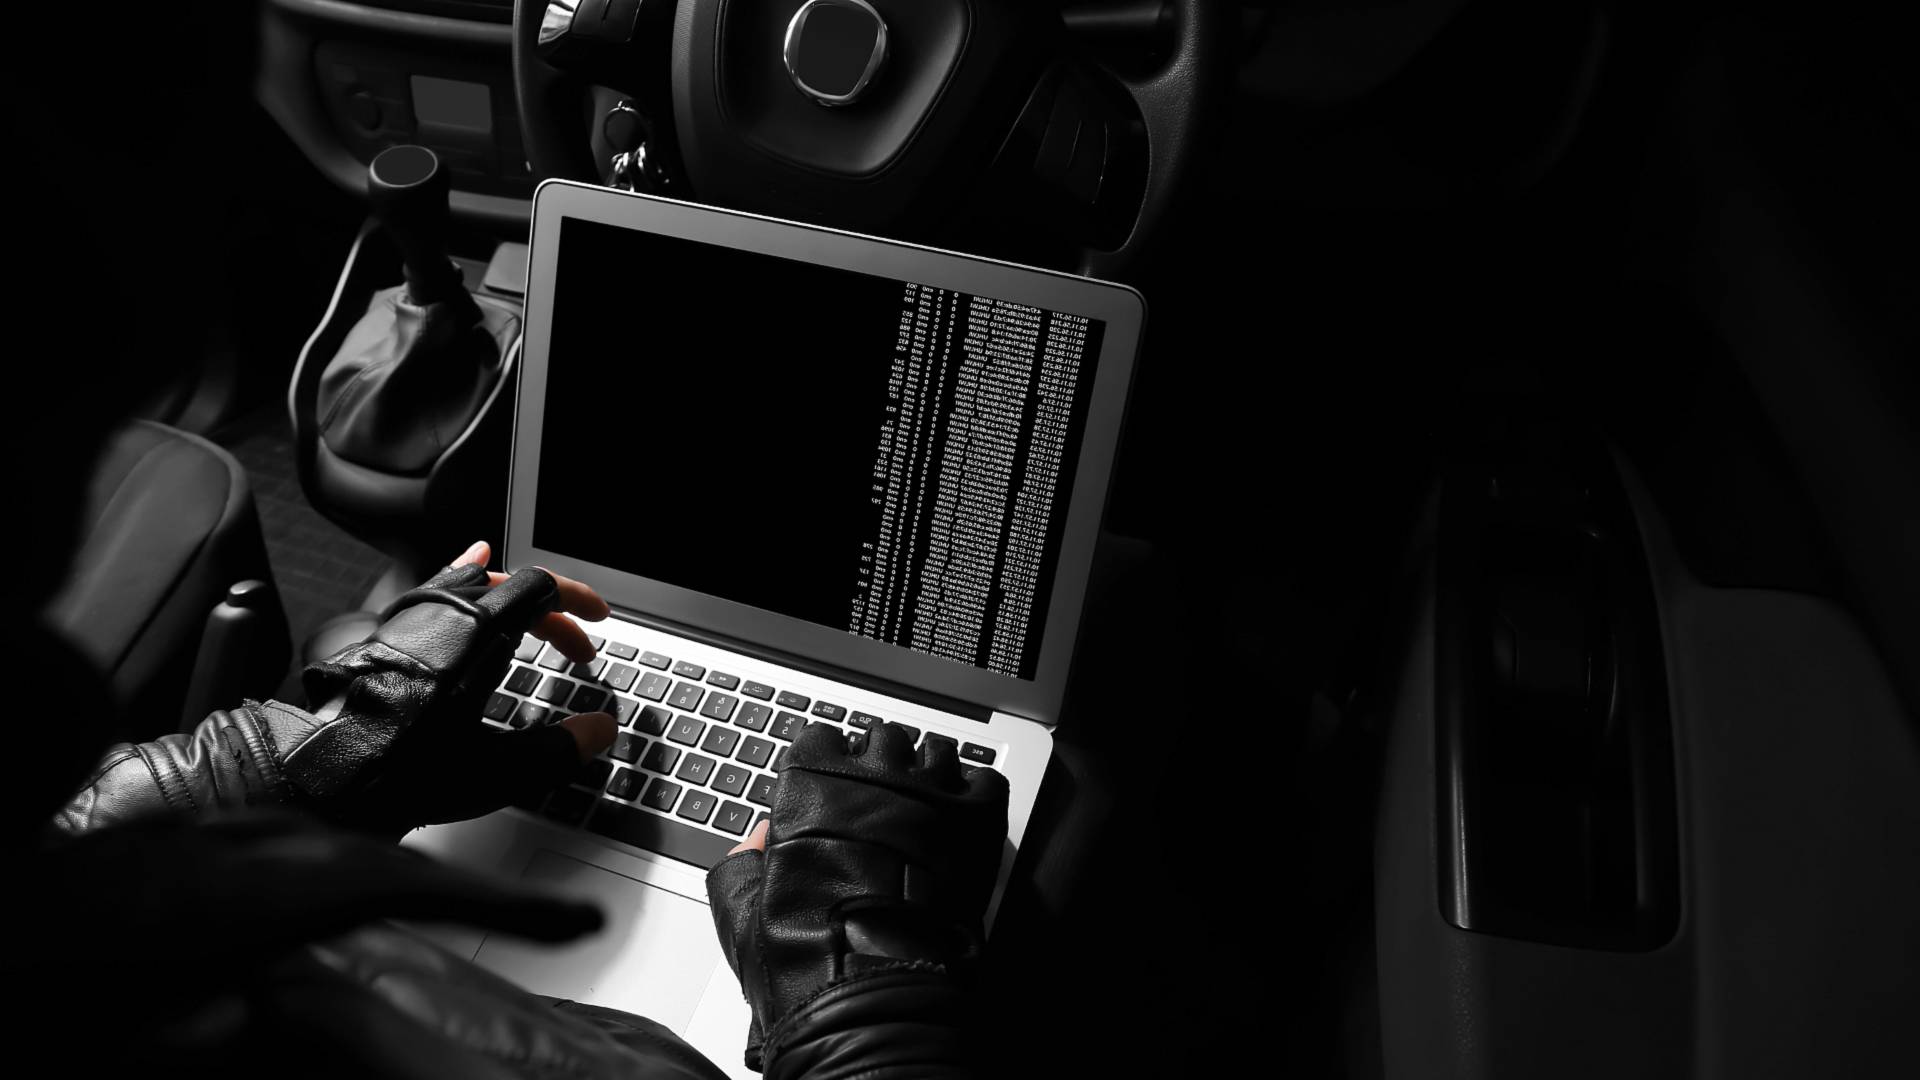 88 درصد خودروهای مجهز به ورود بدون کلید دزدیده میشوند